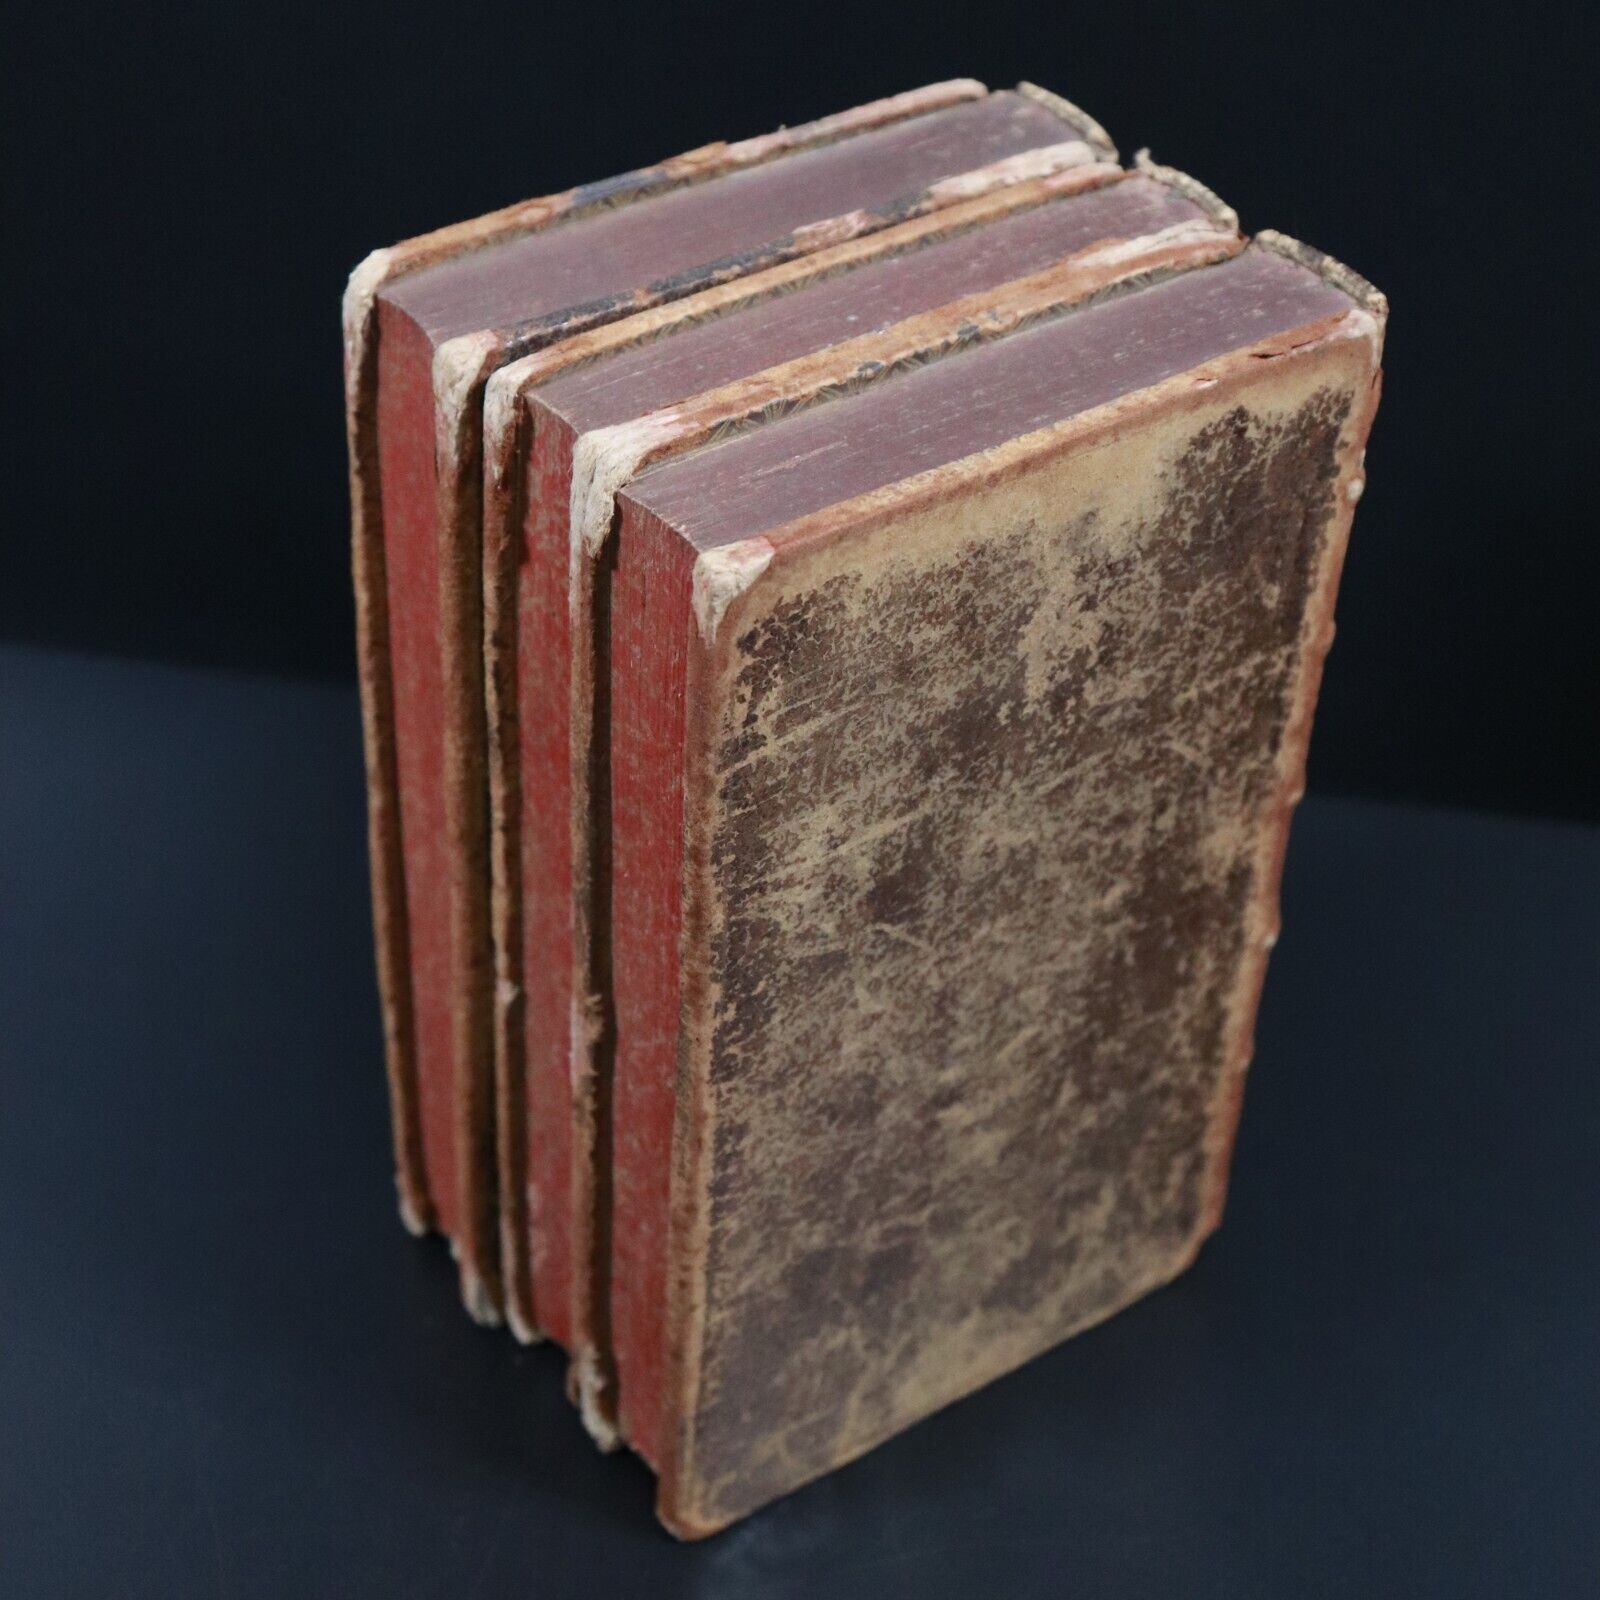 1709 3vol Epistres De Saint Paul Antiquarian French Theology Books Corinthiens